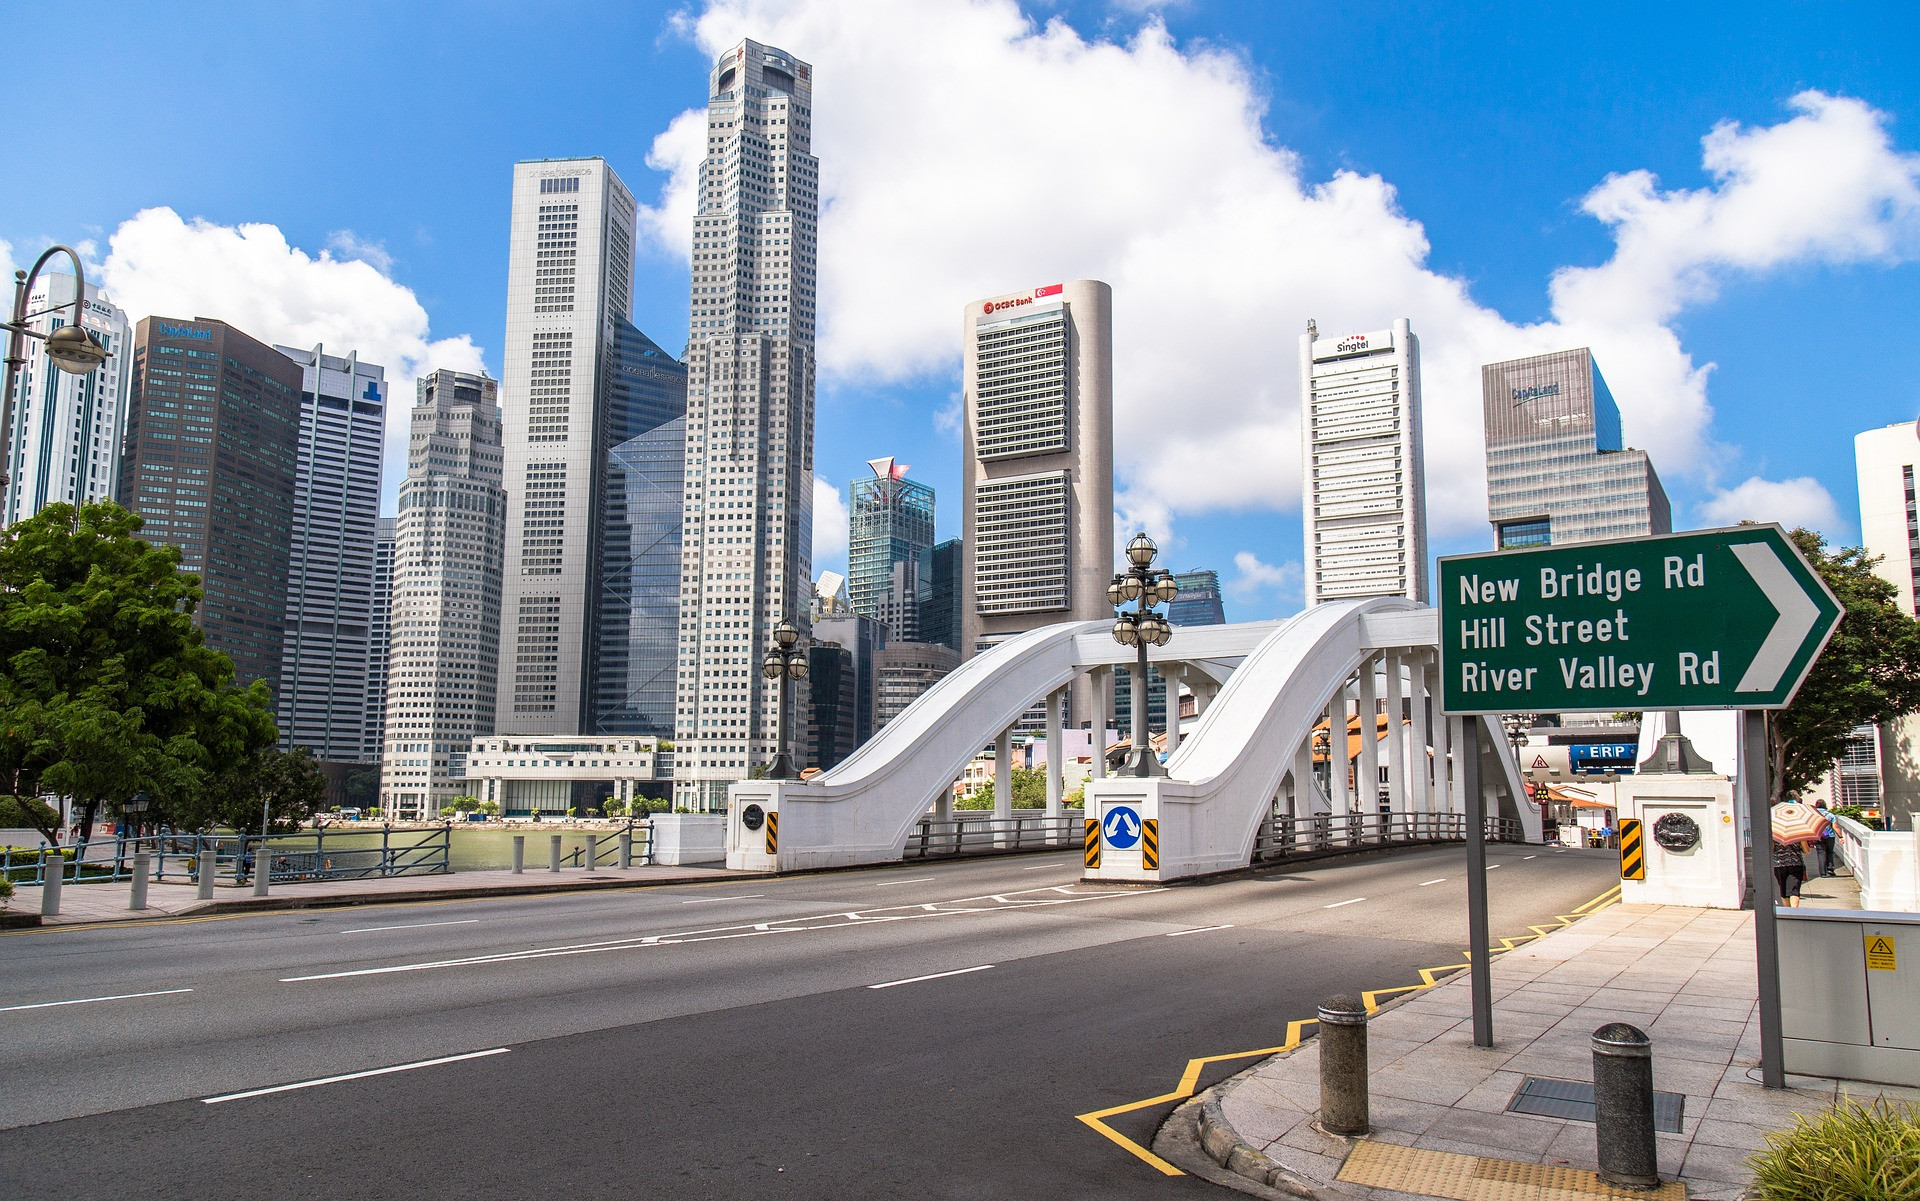 Moderný mestský štát Singapur sa snaží byť prvým inteligentným národom na svete. Jeho iniciatíva Smart Nation spája údaje zo siete senzorov, ktorá sa rozprestiera po celom ostrove. Zozbierané údaje sa ukladajú do otvoreného fondu údajov a tiež do dynamického digitálneho modelu mesta. Tento virtuálny Singapur umožňuje plánovačom mesta testovať koncepty, analyzovať prevádzku a spúšťať rôzne simulované scenáre, ako napríklad evakuáciu davu v prípade núdze.

V Singapure je 98 percent služieb dostupných on-line a k dispozícii sú taktiež mobilné zdravotné, komunálne a dopravné aplikácie. Senzory a inteligentné aplikácie vo verejnom bývaní poskytujú obyvateľom spätnú väzbu, ktorá im pomáha znížiť spotrebu energie, vody a znížiť náklady. Do roku 2020 má Singapur v pláne vybaviť všetky vozidlá systémom satelitnej navigácie, vďaka čomu získa údaje užitočné pre budúce plánovanie, vývoj a údržbu takmer všetkých verejných projektov.